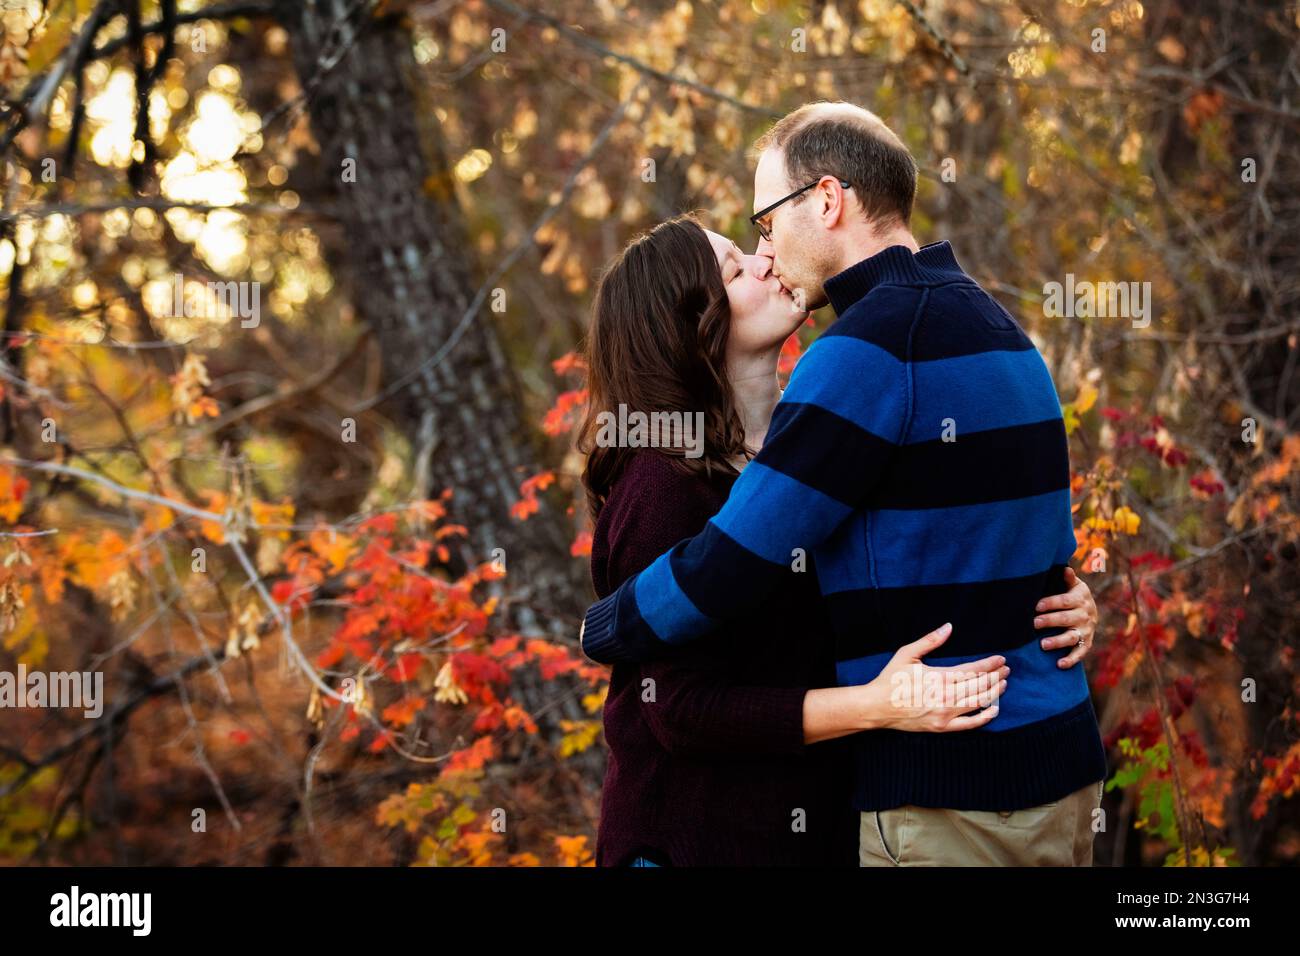 Un couple marié mature s'embrasse tout en passant du temps ensemble à l'extérieur dans un parc de la ville pendant la saison d'automne; St. Albert, Alberta, Canada Banque D'Images